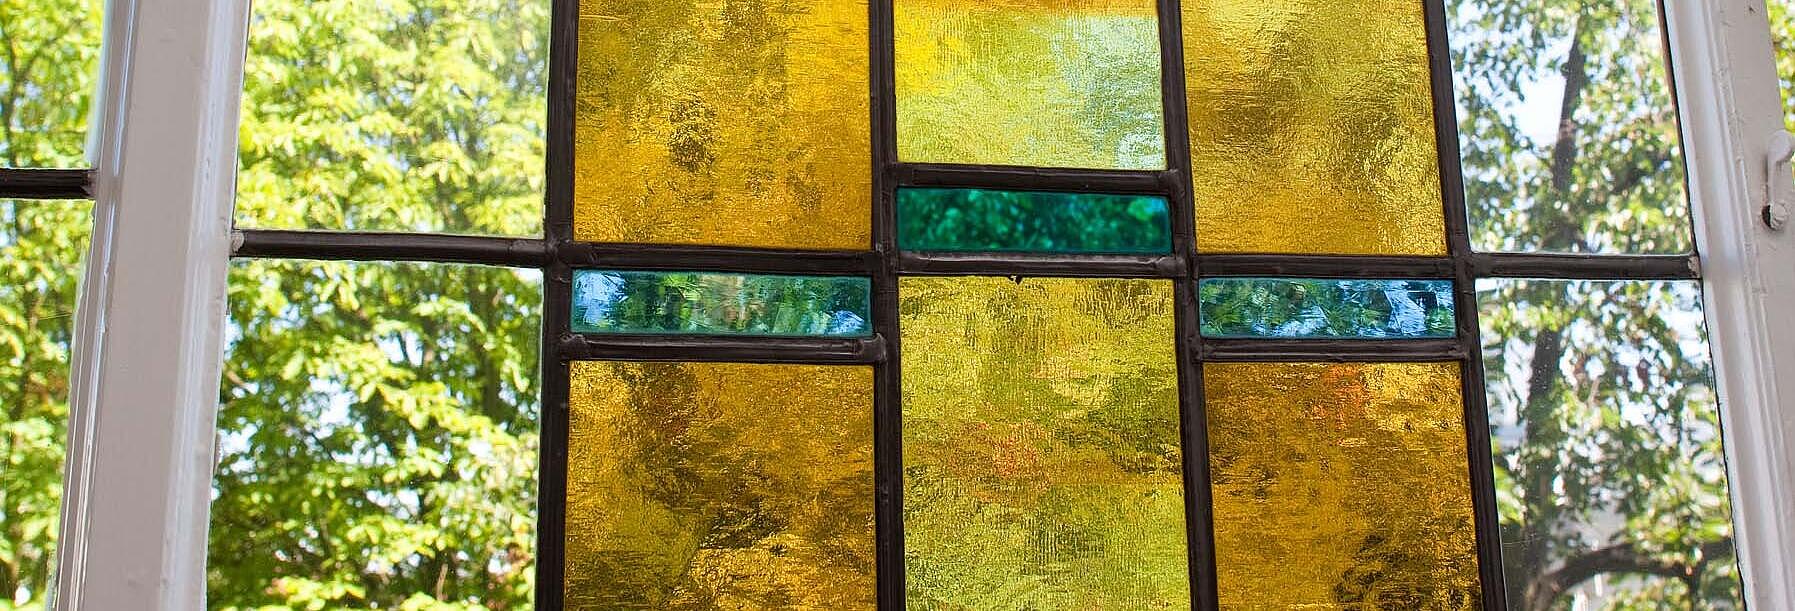 Bild zeigt eine Nahaufnahme eines mit buntem Glas verziertes Bleiglasfenster aus dem späten 19. Jahrhundert. In der Mitte zeigt eine Malerei eine zieselierte Empore, in dessen Blumenkübel unterschiedliche Blüten sichtbar sind.